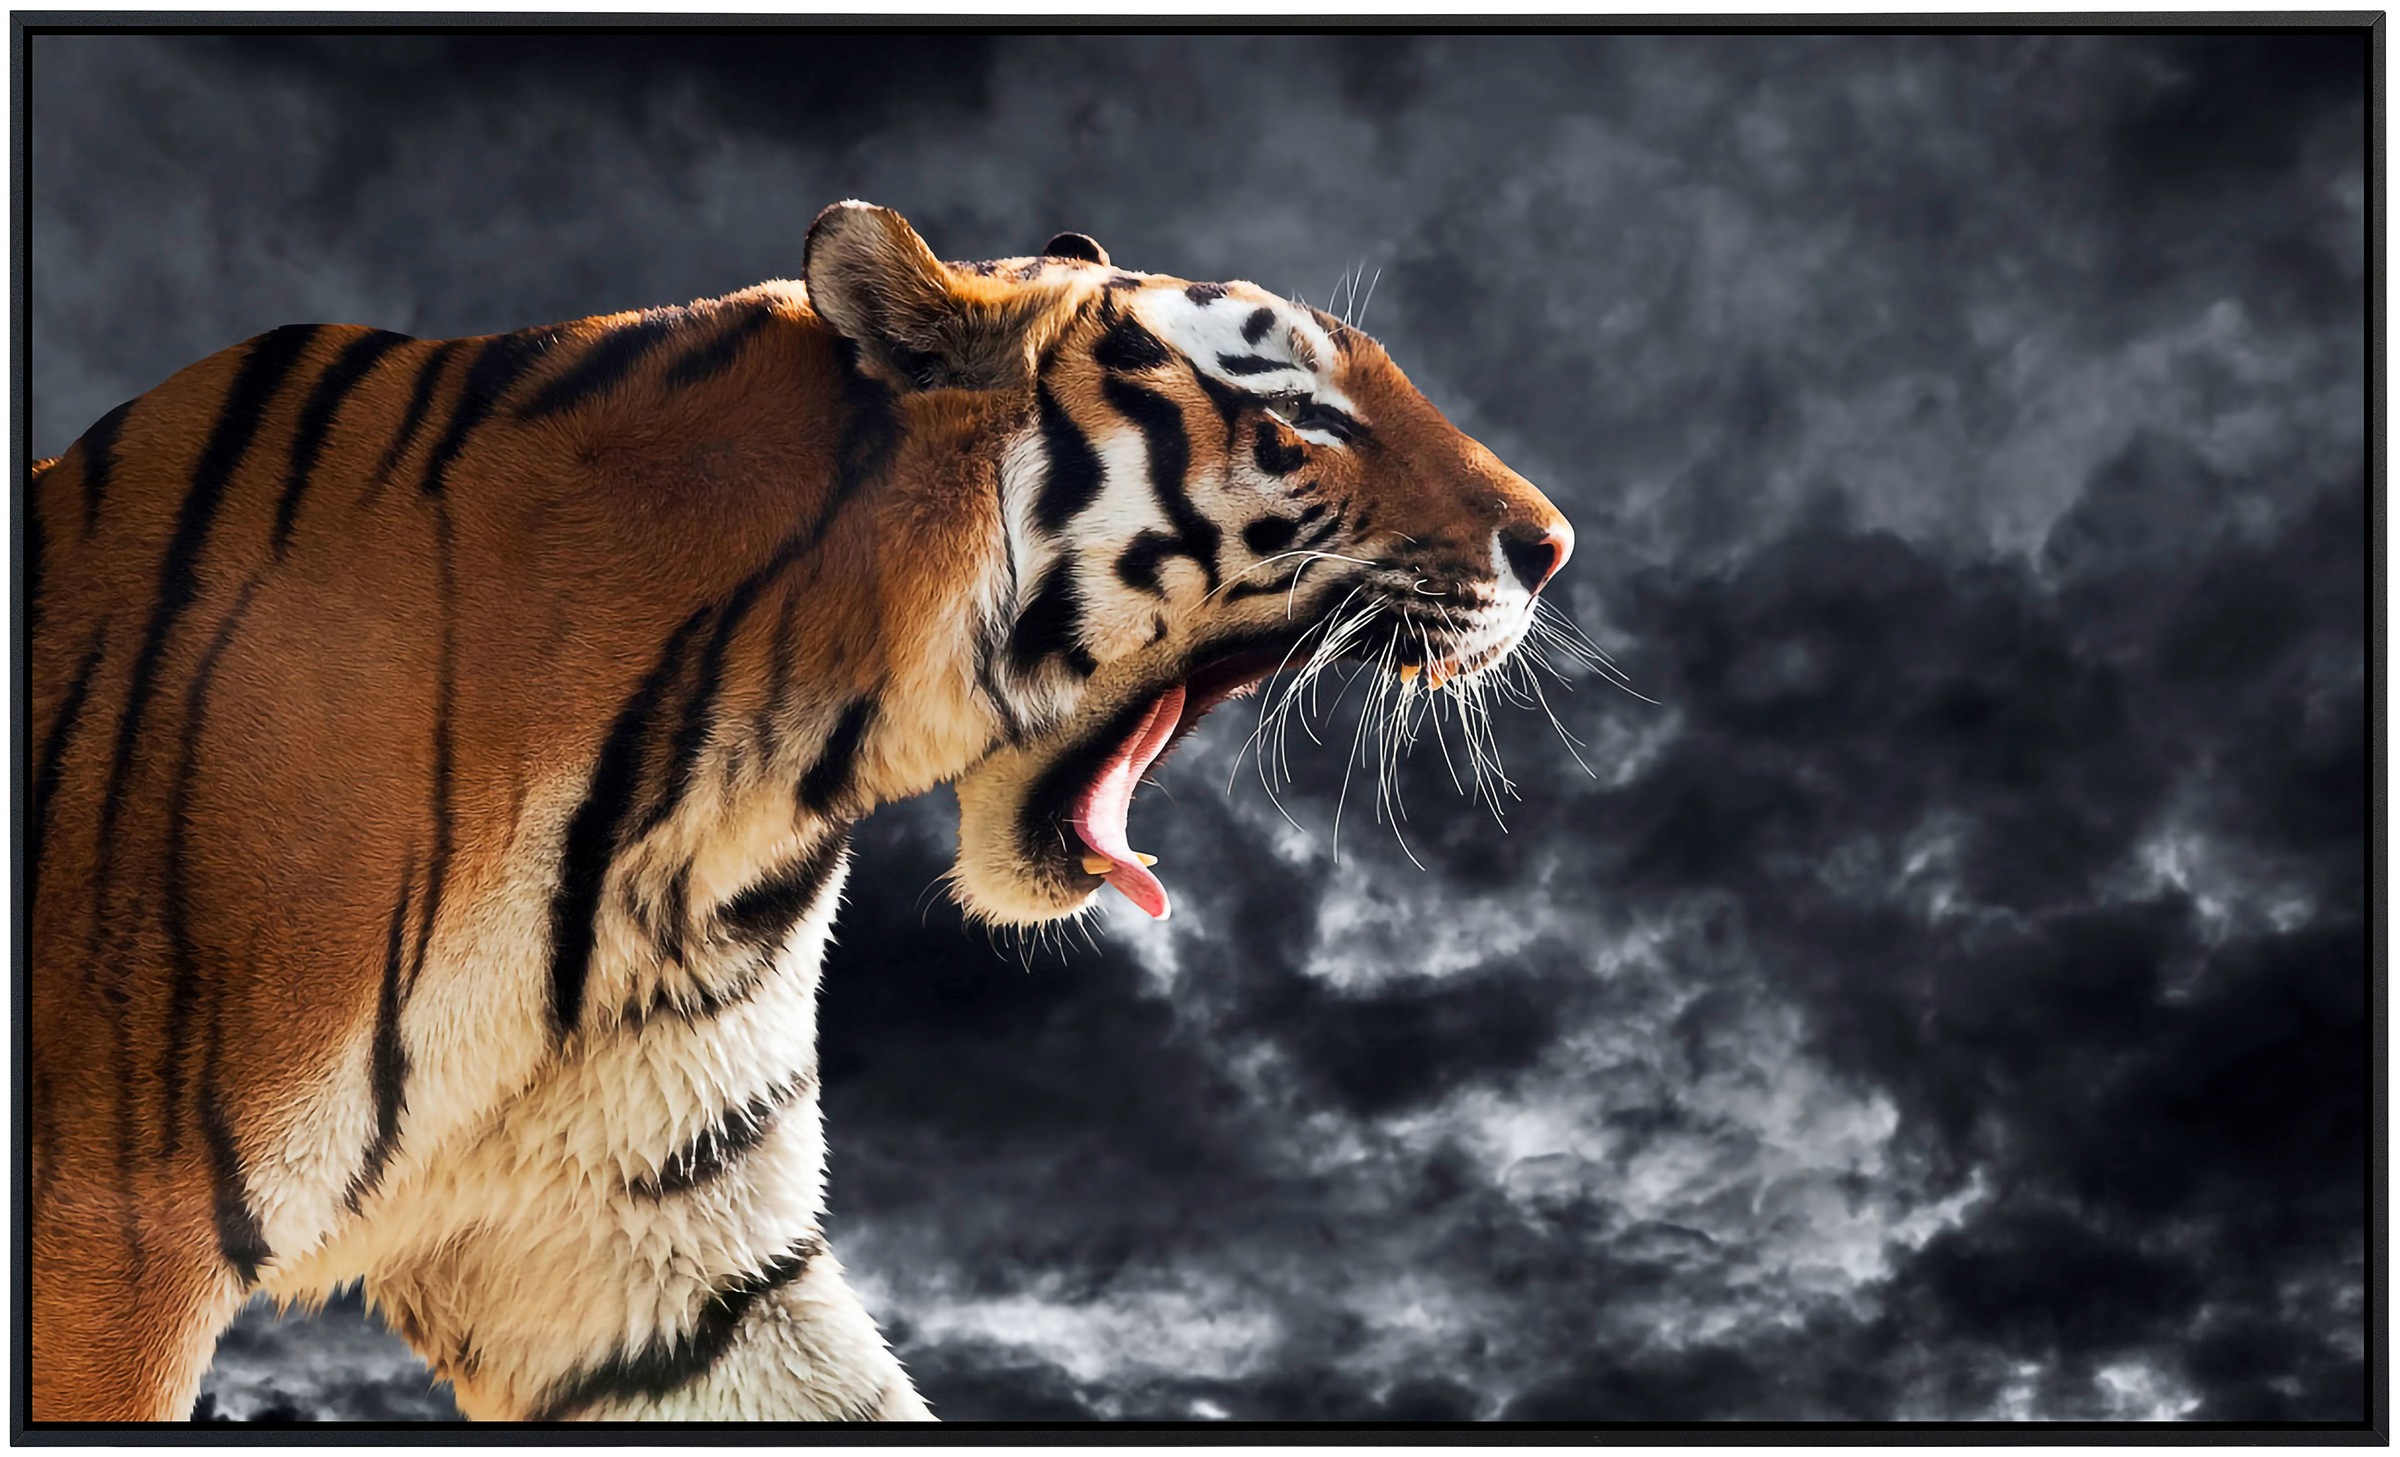 Papermoon Infrarotheizung »Brüllender wilder Tiger«, sehr angenehme Strahlu günstig online kaufen